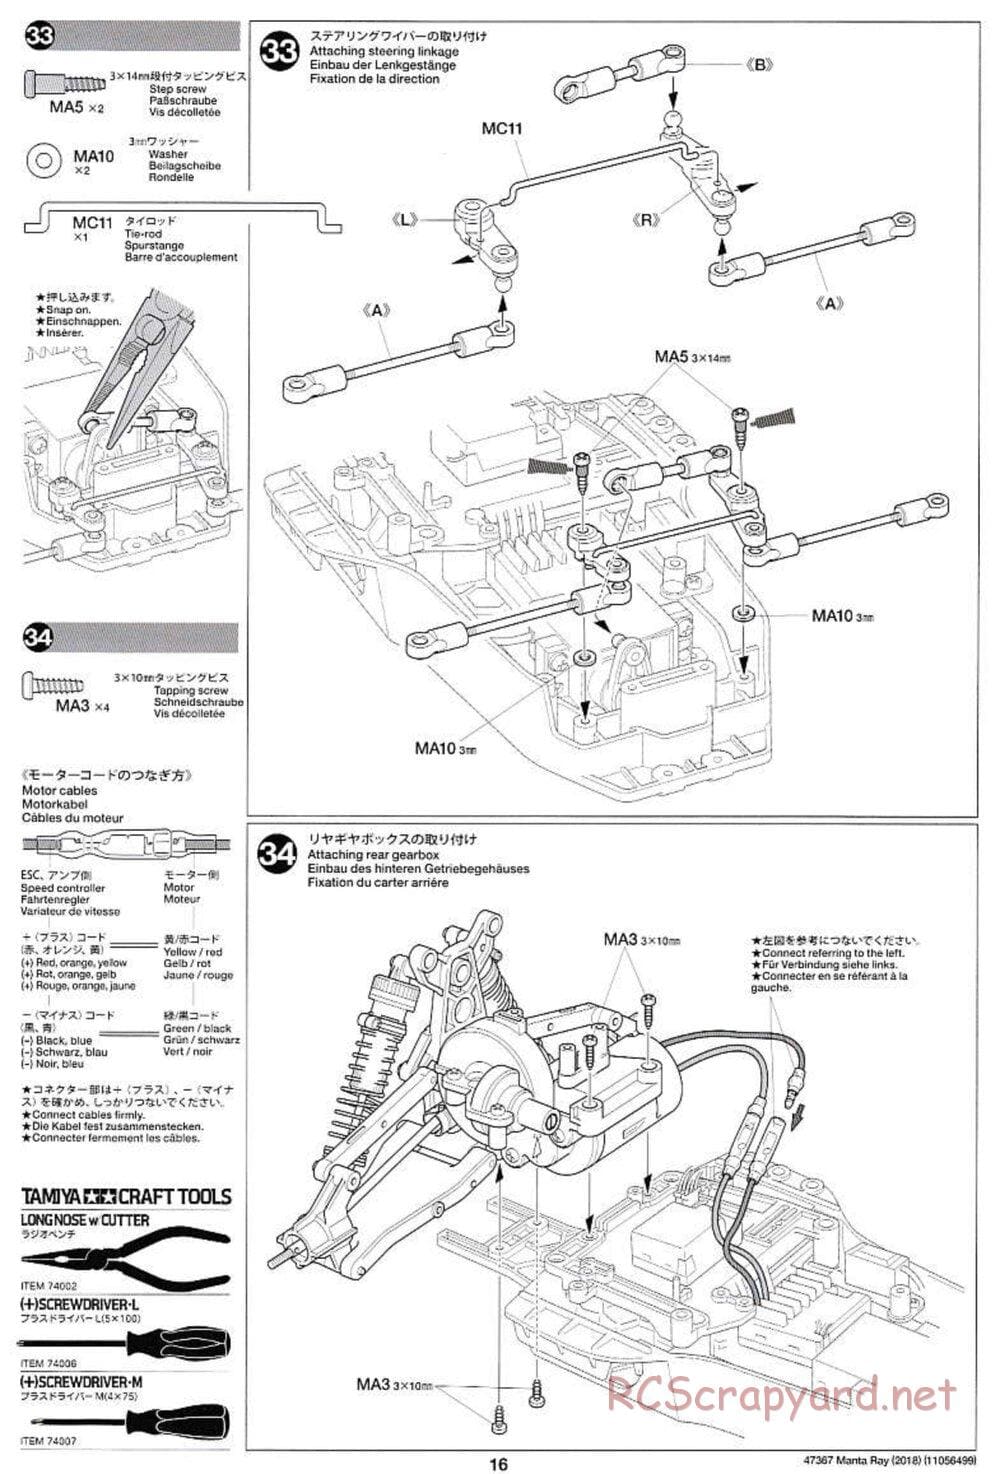 Tamiya - Manta Ray 2018 - DF-01 Chassis - Manual - Page 16